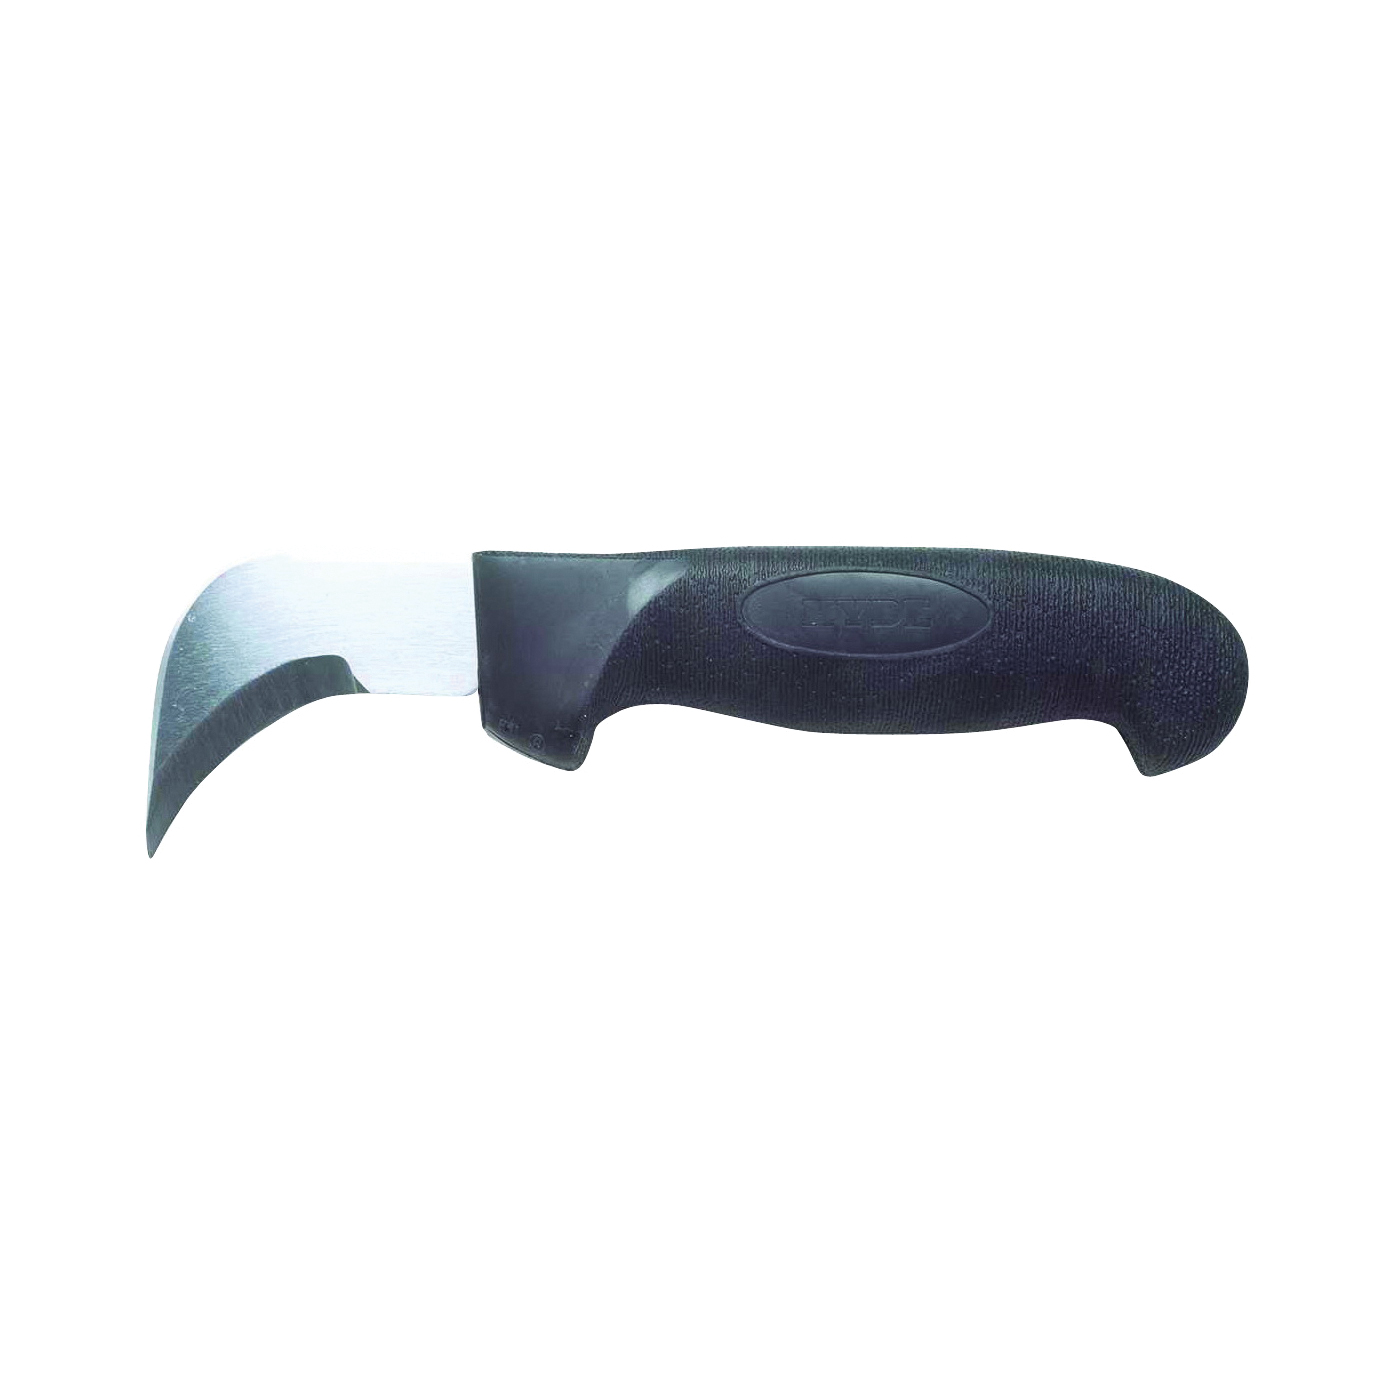 Black & Silver Series 20550 Flooring/Roofing Knife, Chrome Vanadium Steel Blade, Soft Grip Handle, 11-1/2 in OAL